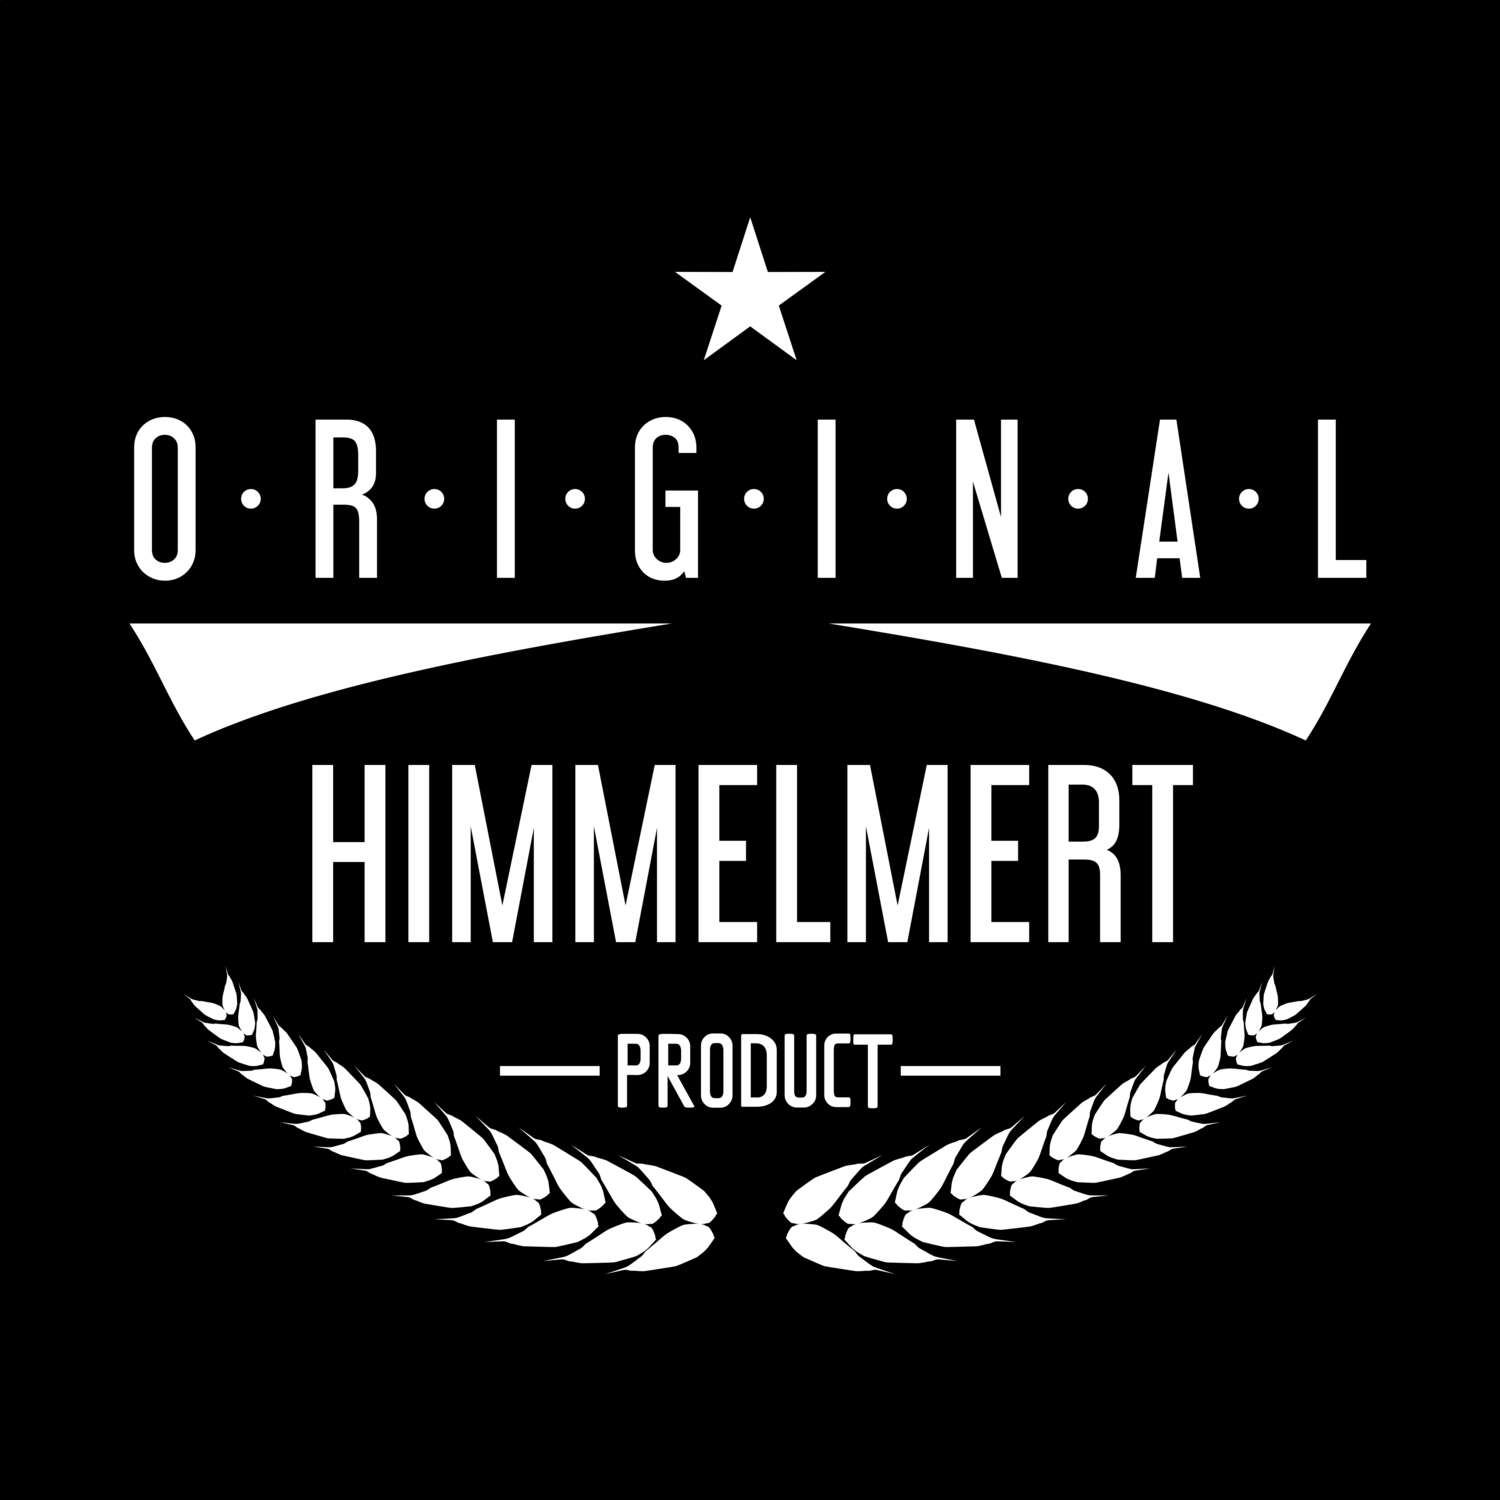 Himmelmert T-Shirt »Original Product«